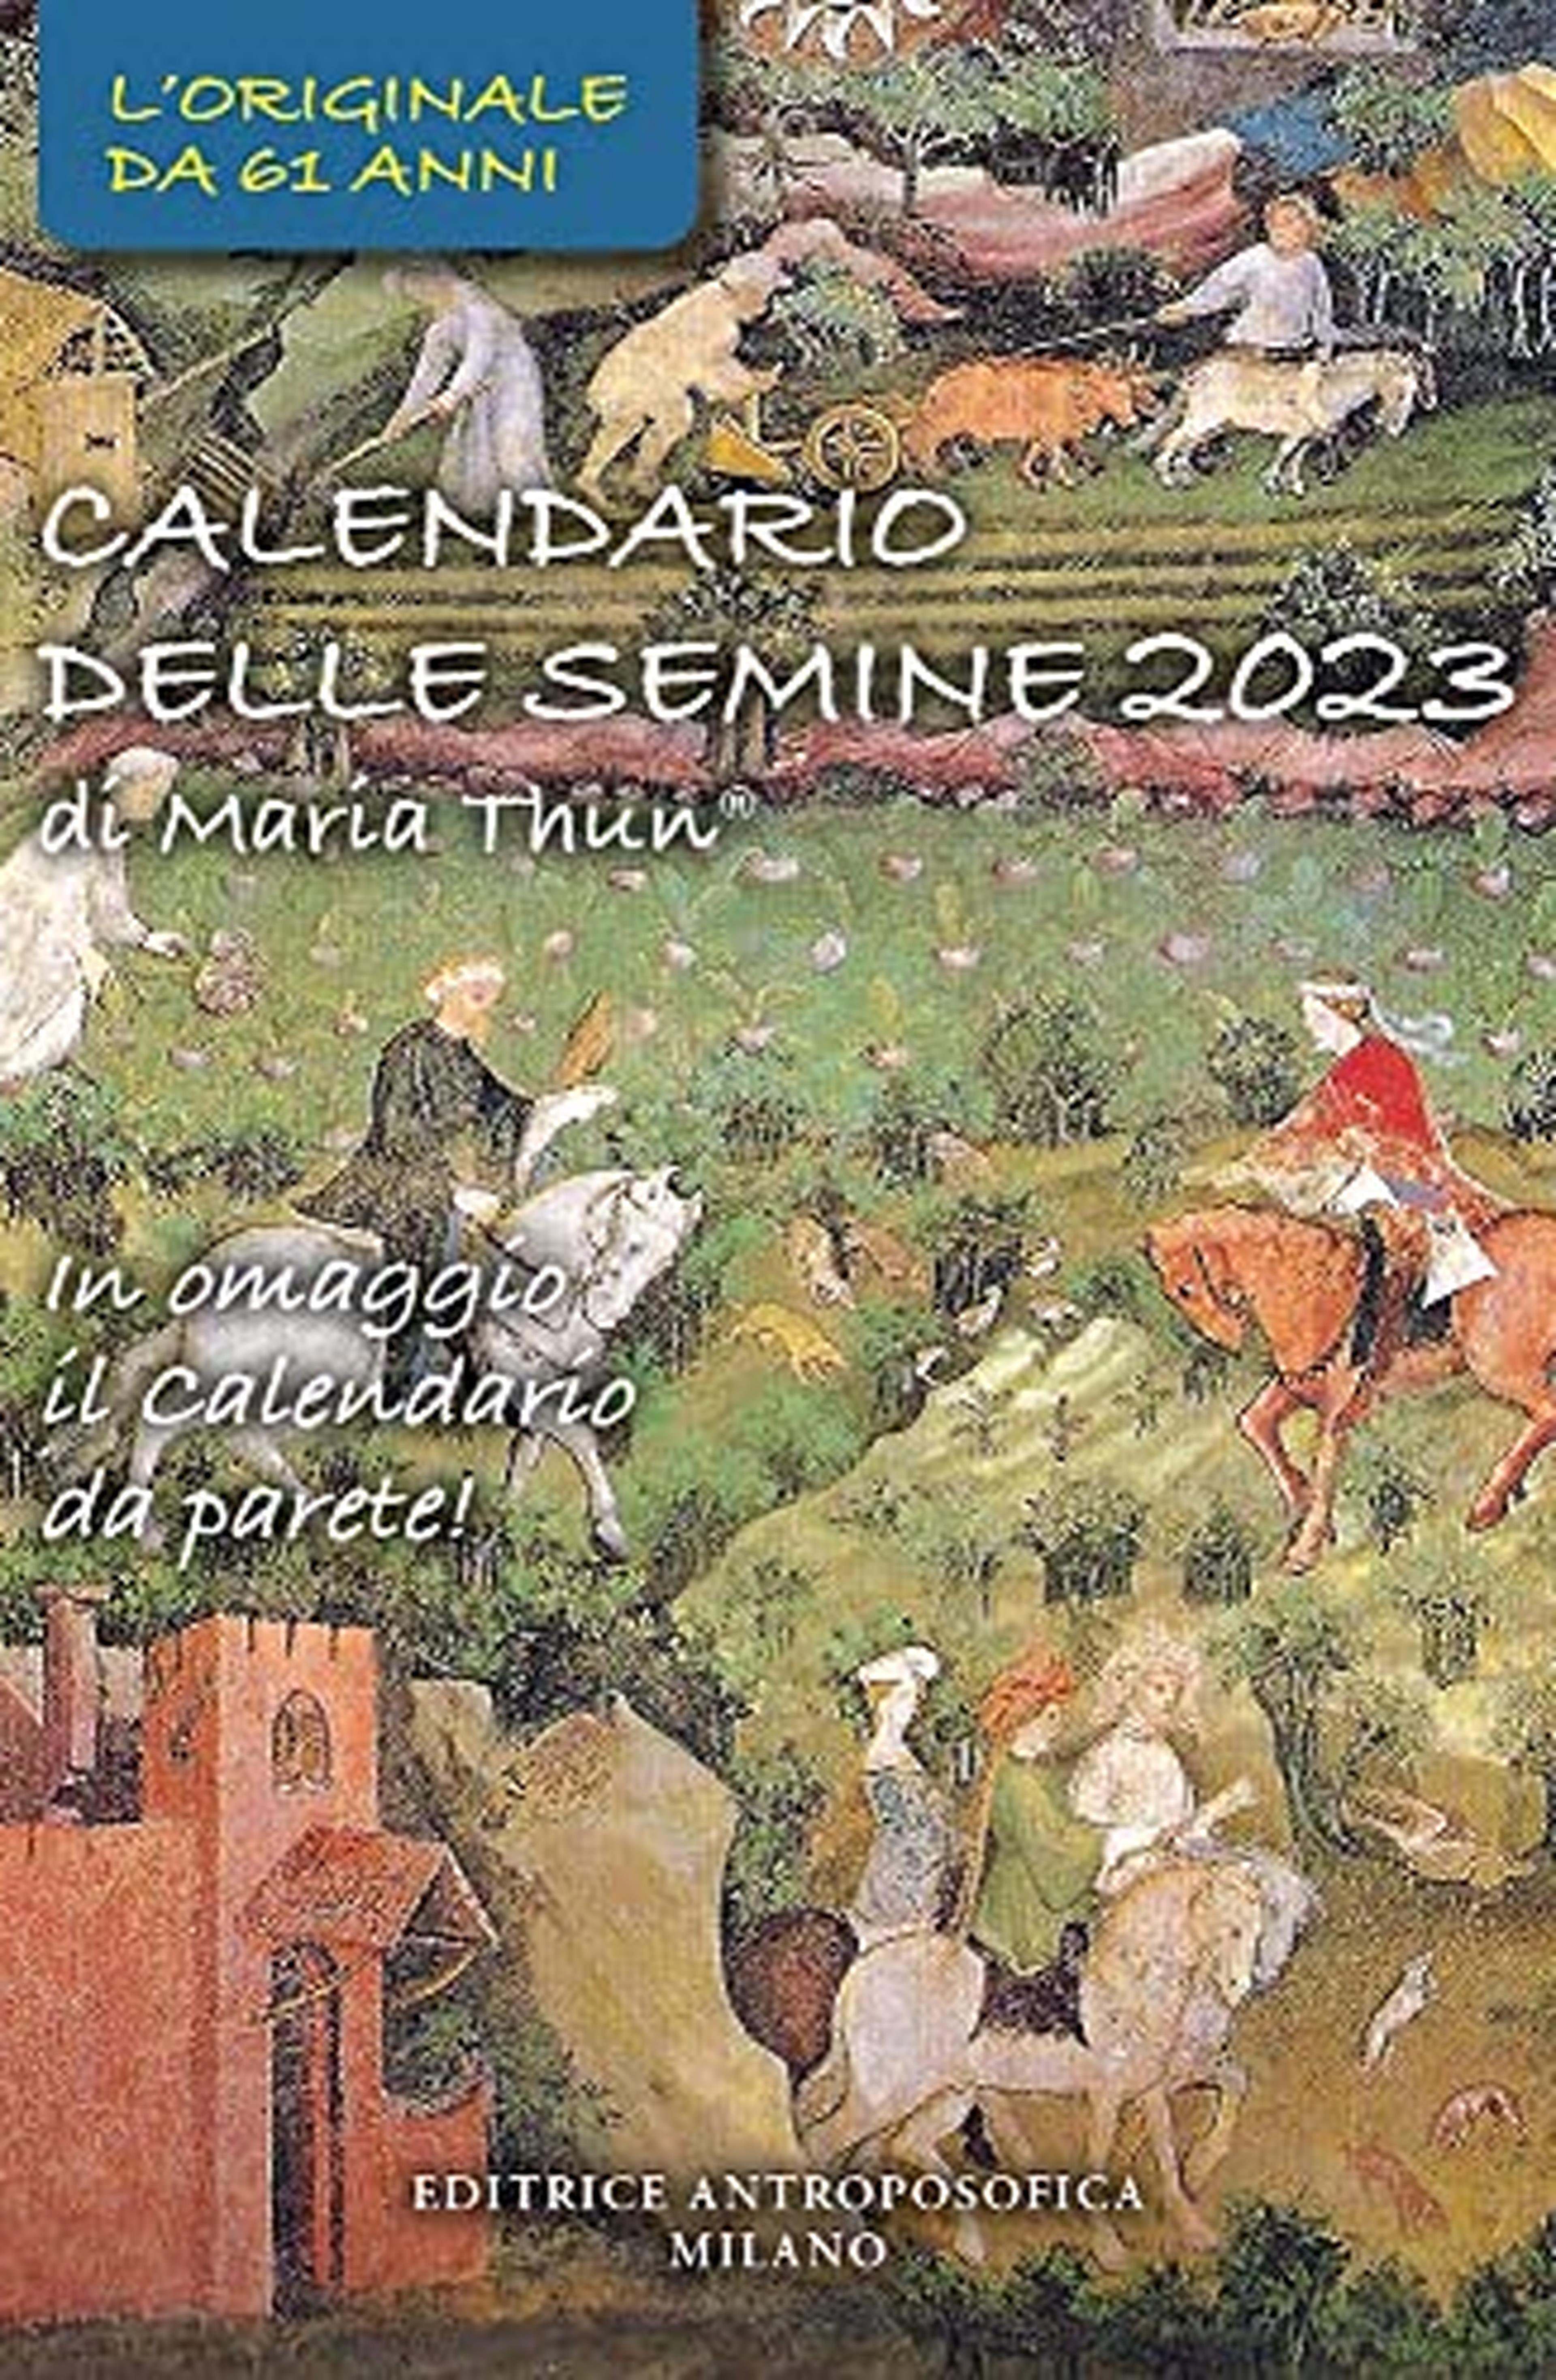 Calendario delle semine 2023. Con calendario da parete